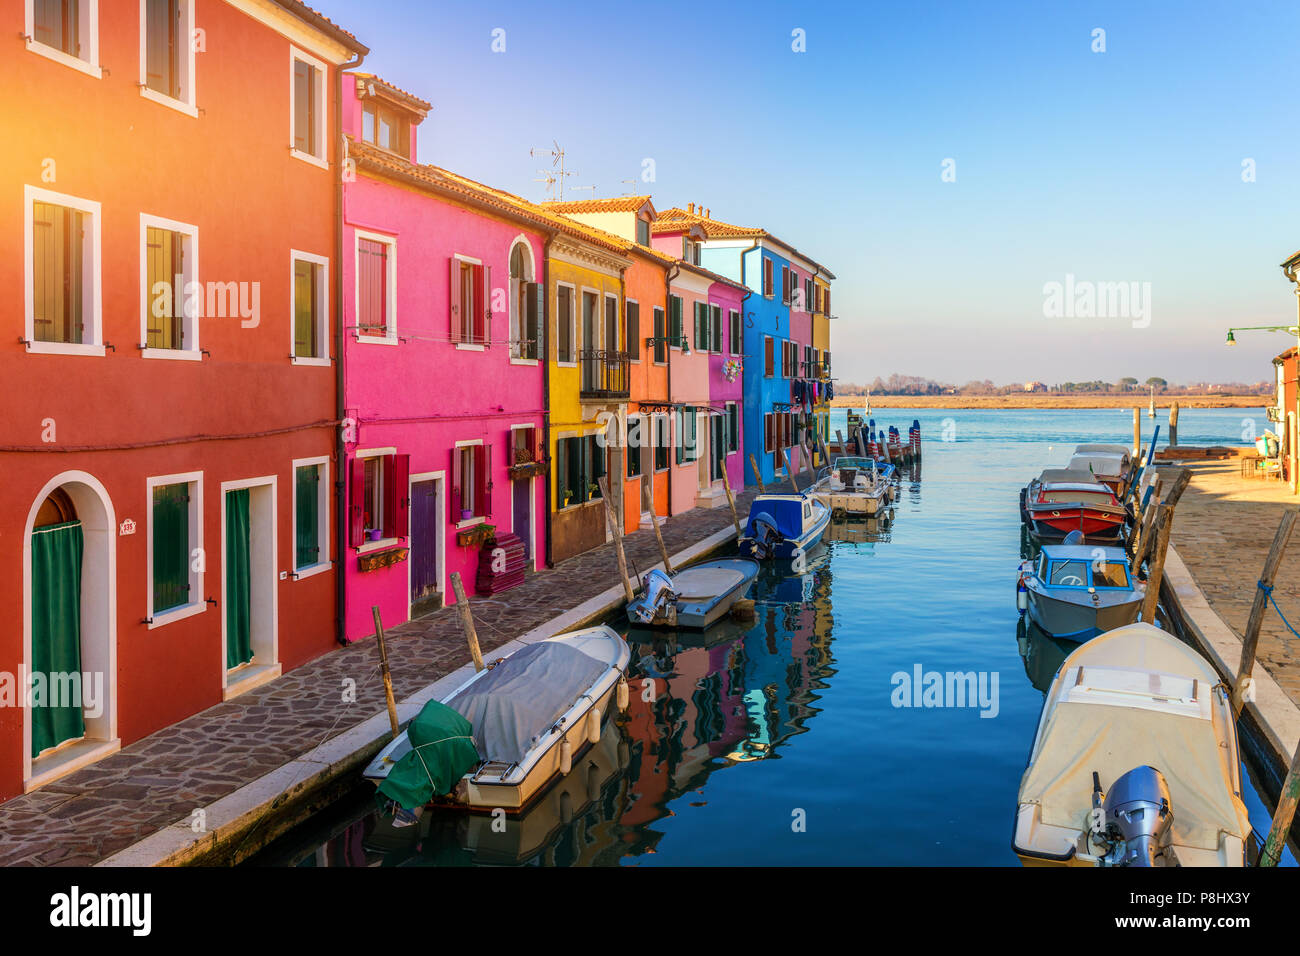 Straße mit bunten Gebäude in Insel Burano, Venedig, Italien. Architektur und Sehenswürdigkeiten von Burano, Venedig Postkarte. Malerischen Kanal und bunten Archi Stockfoto